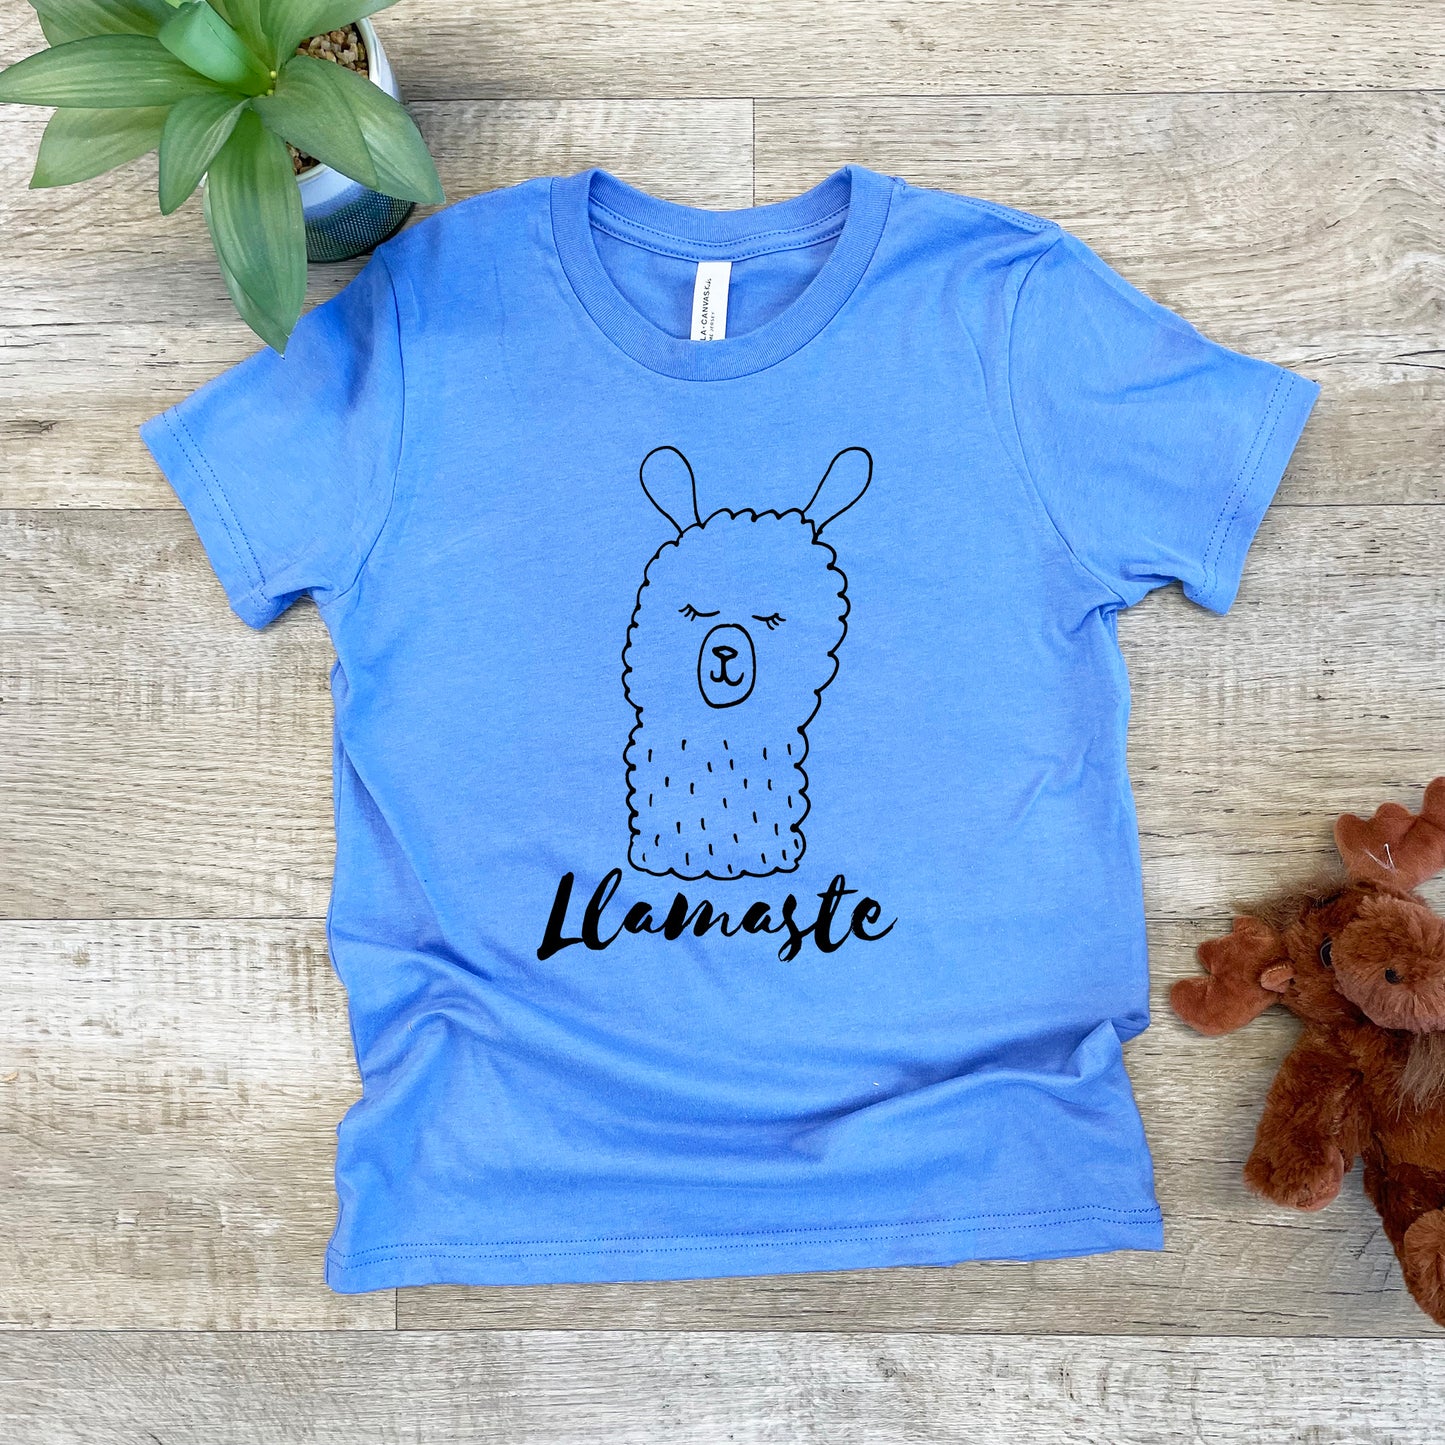 Llamaste (Llama/ Yoga) - Kid's Tee - Columbia Blue or Lavender